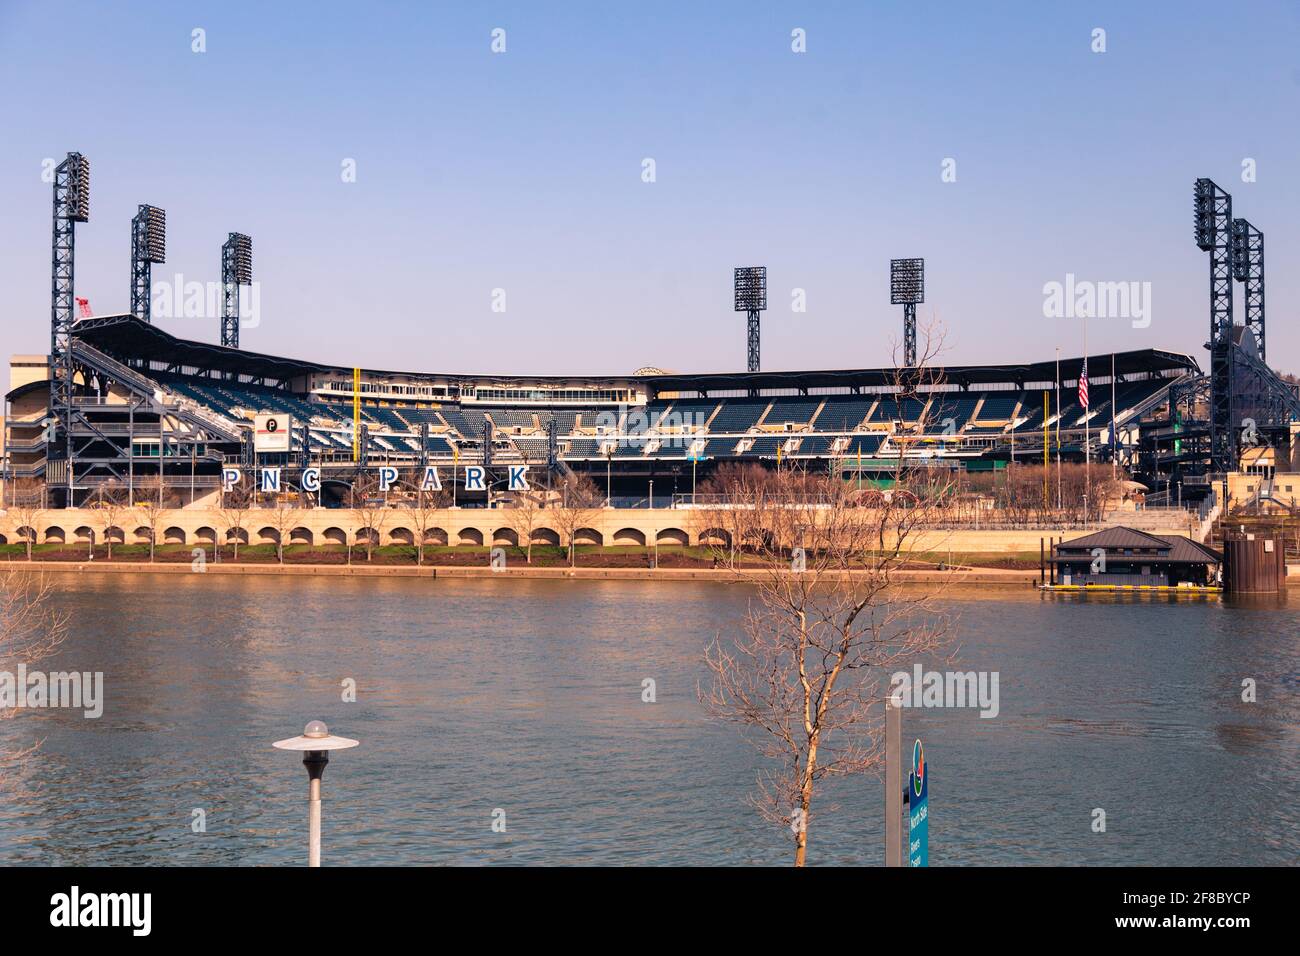 Le magnifique parc PNC à Pittsburgh, Pennsylvanie, États-Unis. C'est le stade de l'équipe de baseball des Pittsburgh Pirates. C'est le long de la rivière Allegheny. Banque D'Images